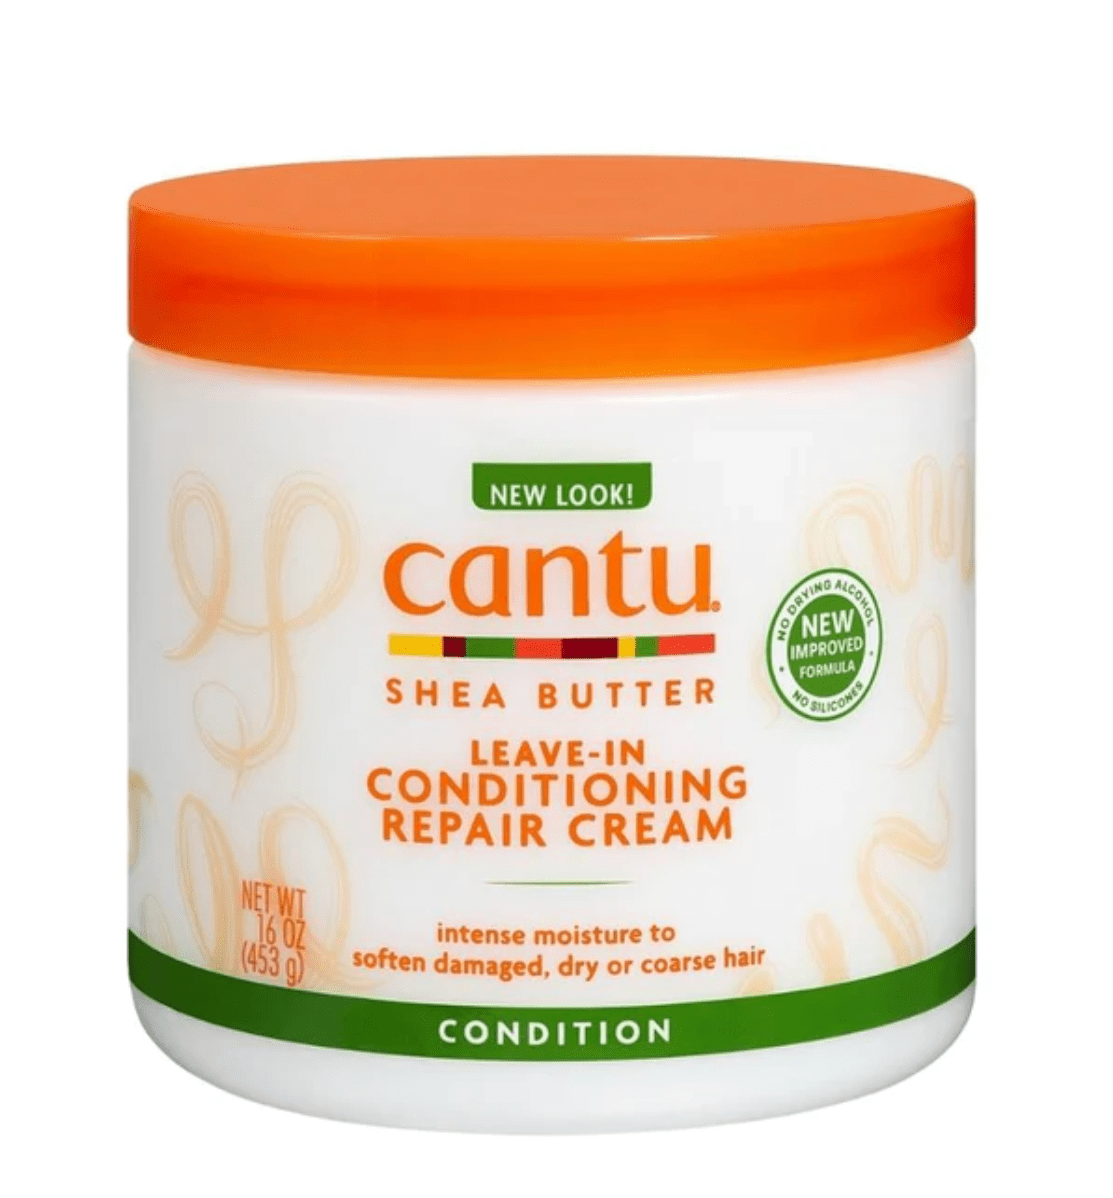 Cantu - Shea Butter - Leave-in conditioner "repair cream" - 453g - Cantu - Ethni Beauty Market